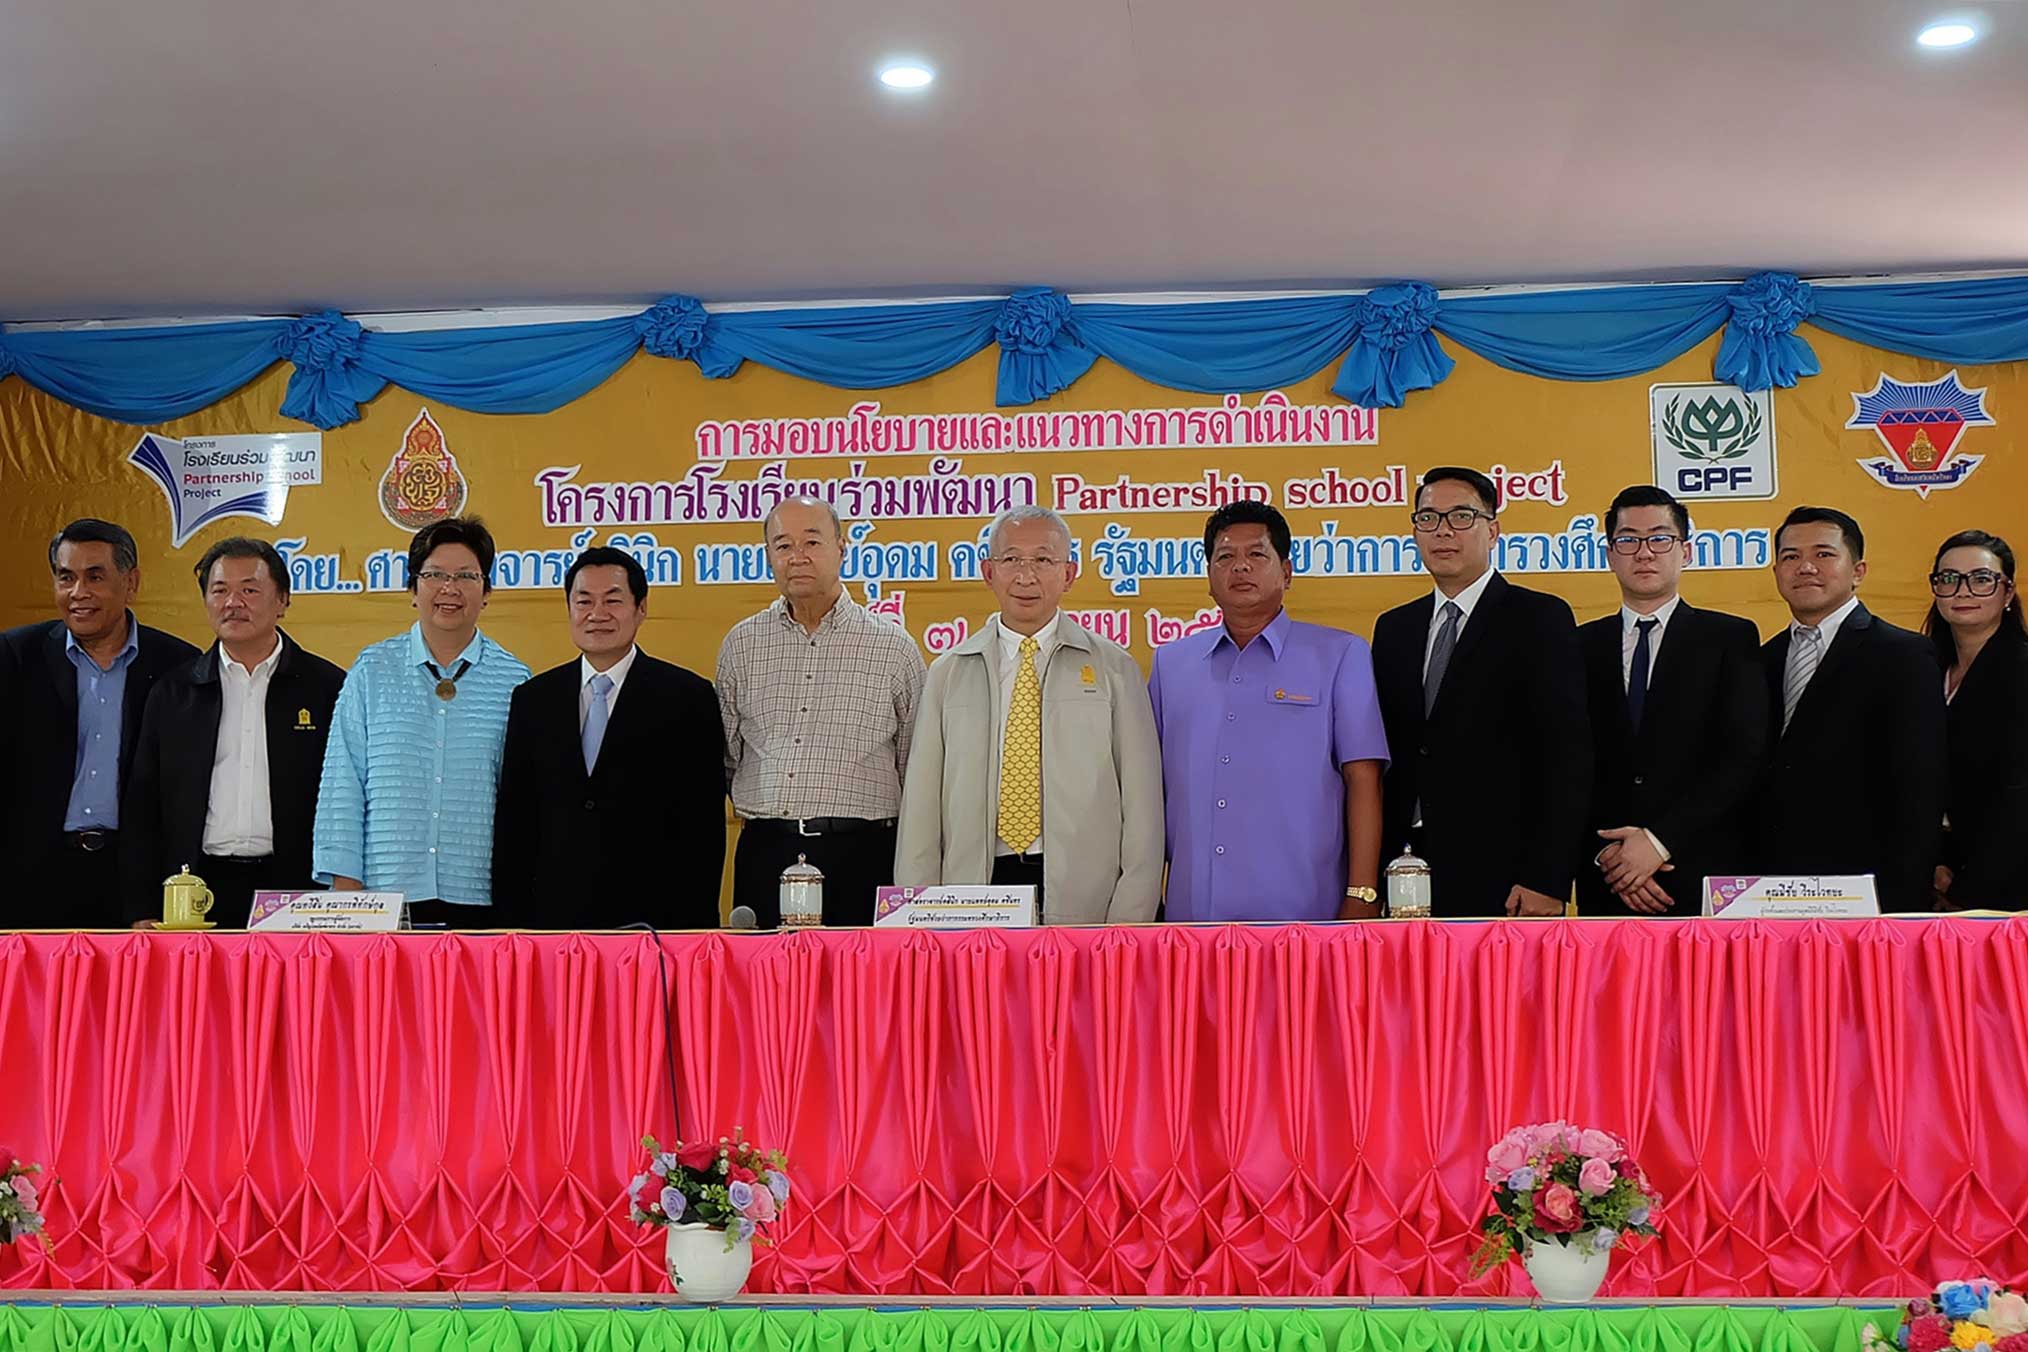 กระทรวงศึกษาฯ จับมือ ซีพีเอฟ หนุนโครงการโรงเรียนร่วมพัฒนา รองรับ “ประเทศไทย 4.0” 